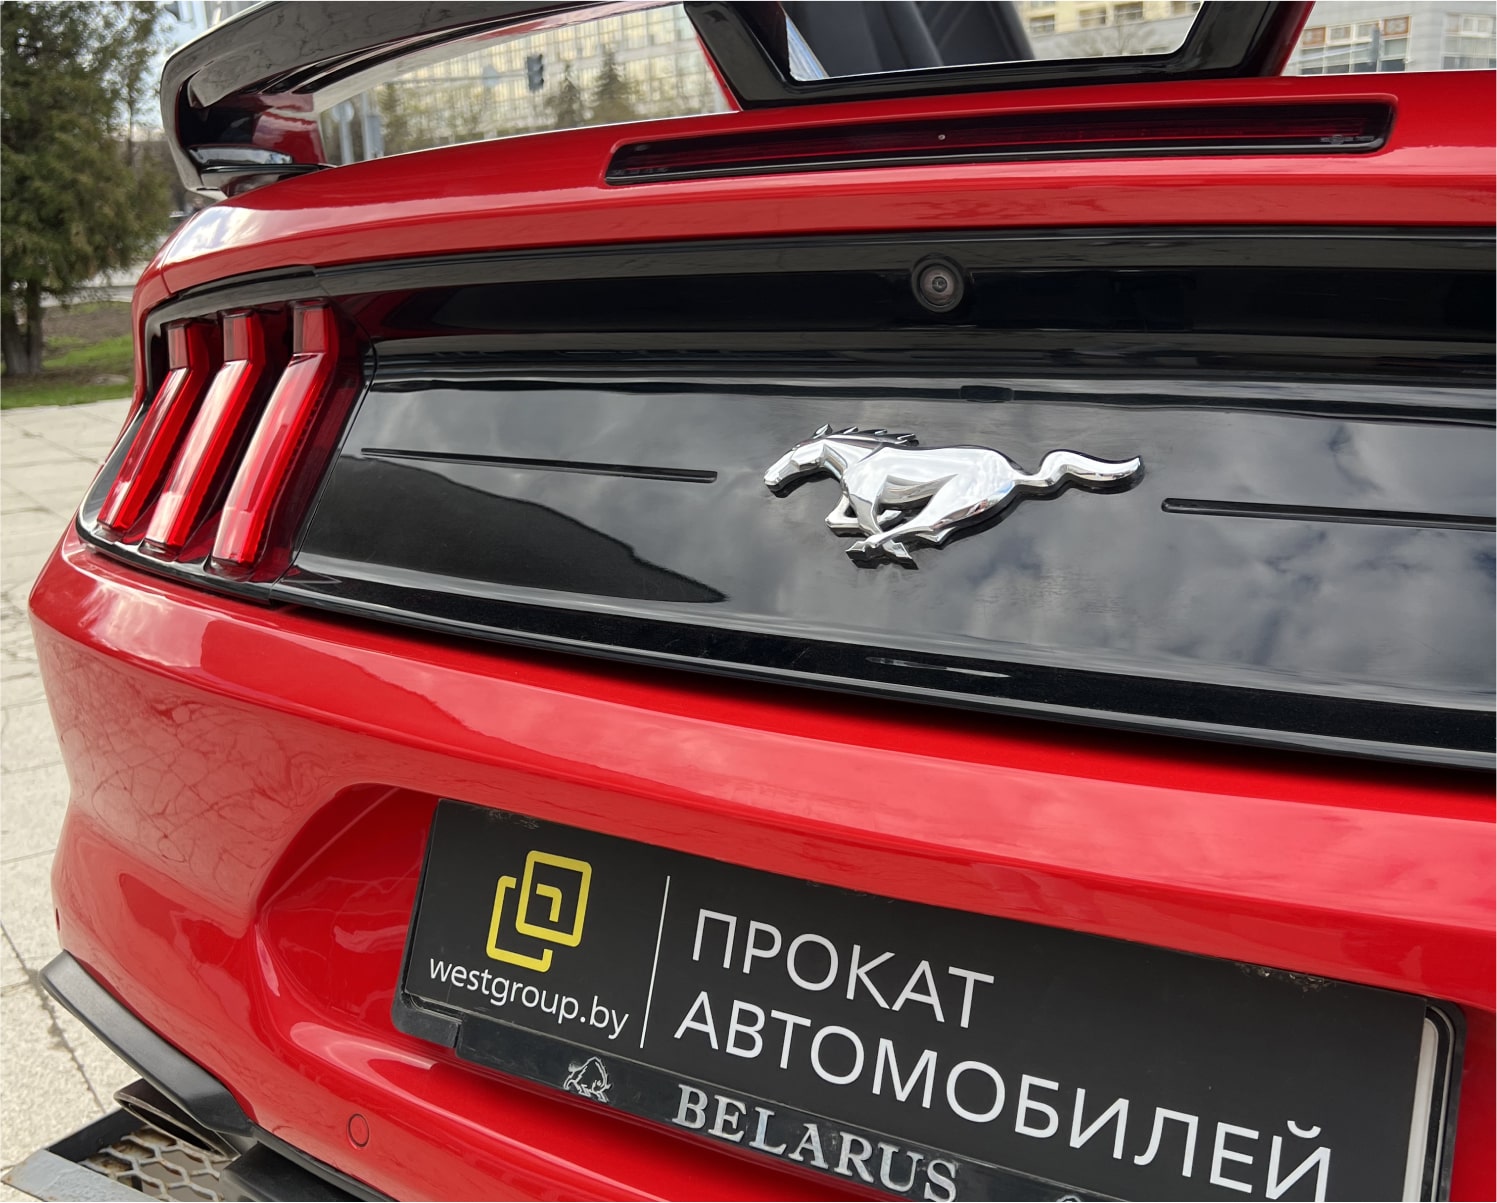 Аренда  Ford Mustang VI S550 Convertible  5 класса 2021 года в городе Минск от 215 $/сутки,  двигатель: Бензин , объем 2.3 AT EcoBoost литров, КАСКО (Мультидрайв), без водителя, вид 2 - West Group